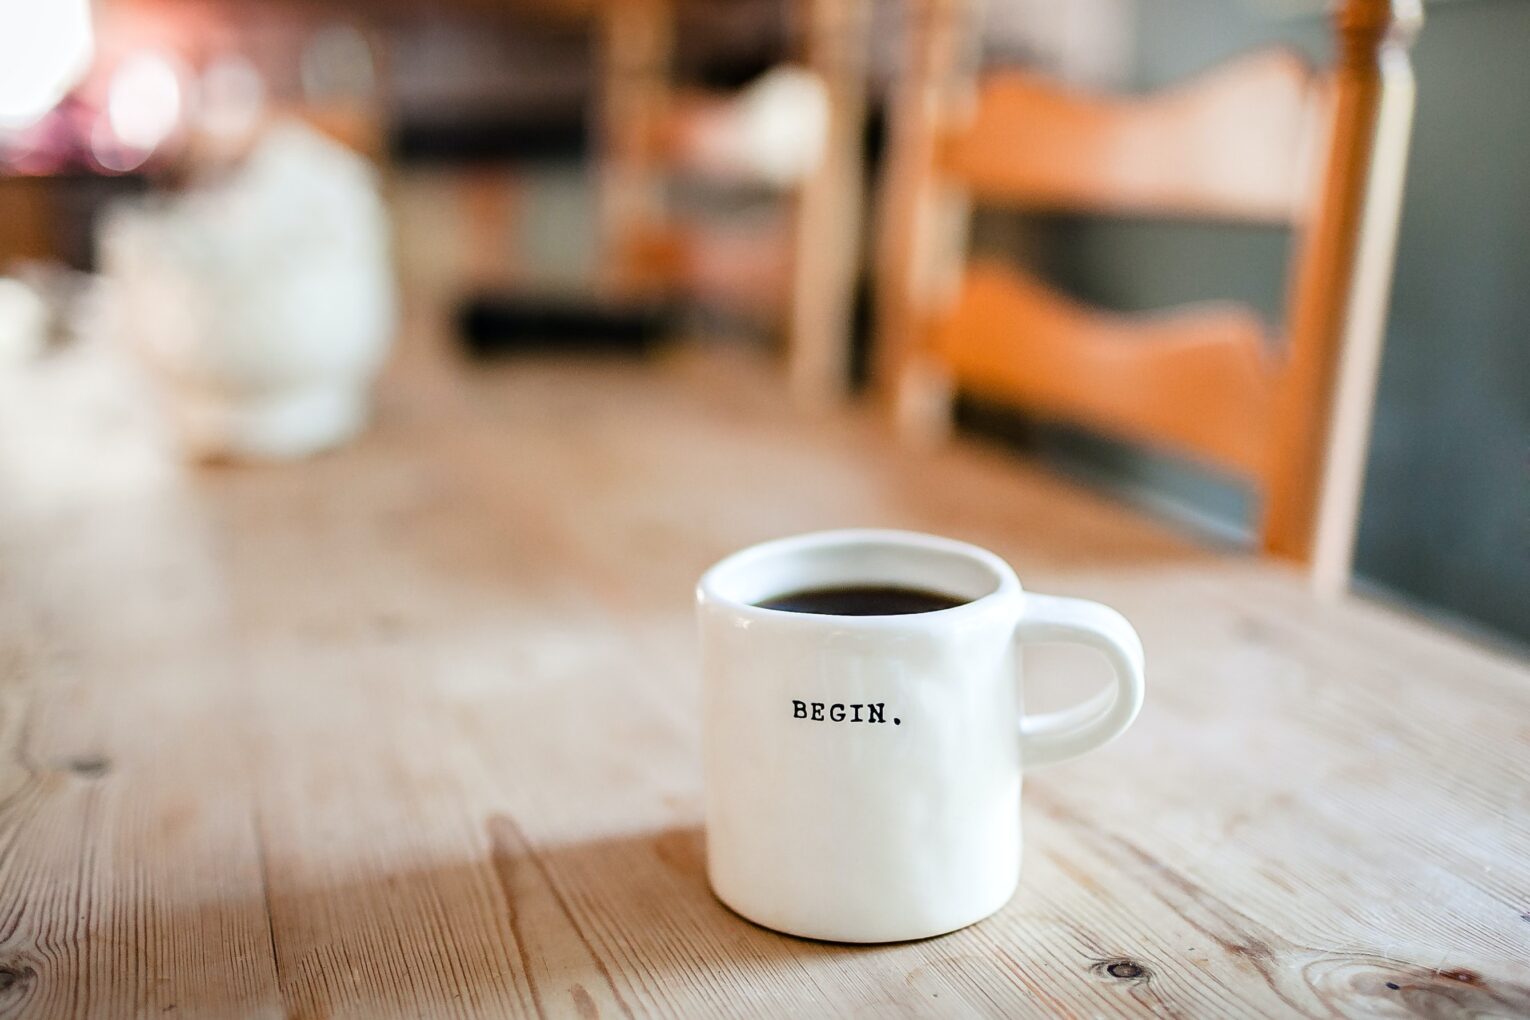 A coffee mug that has 'begin' written on it